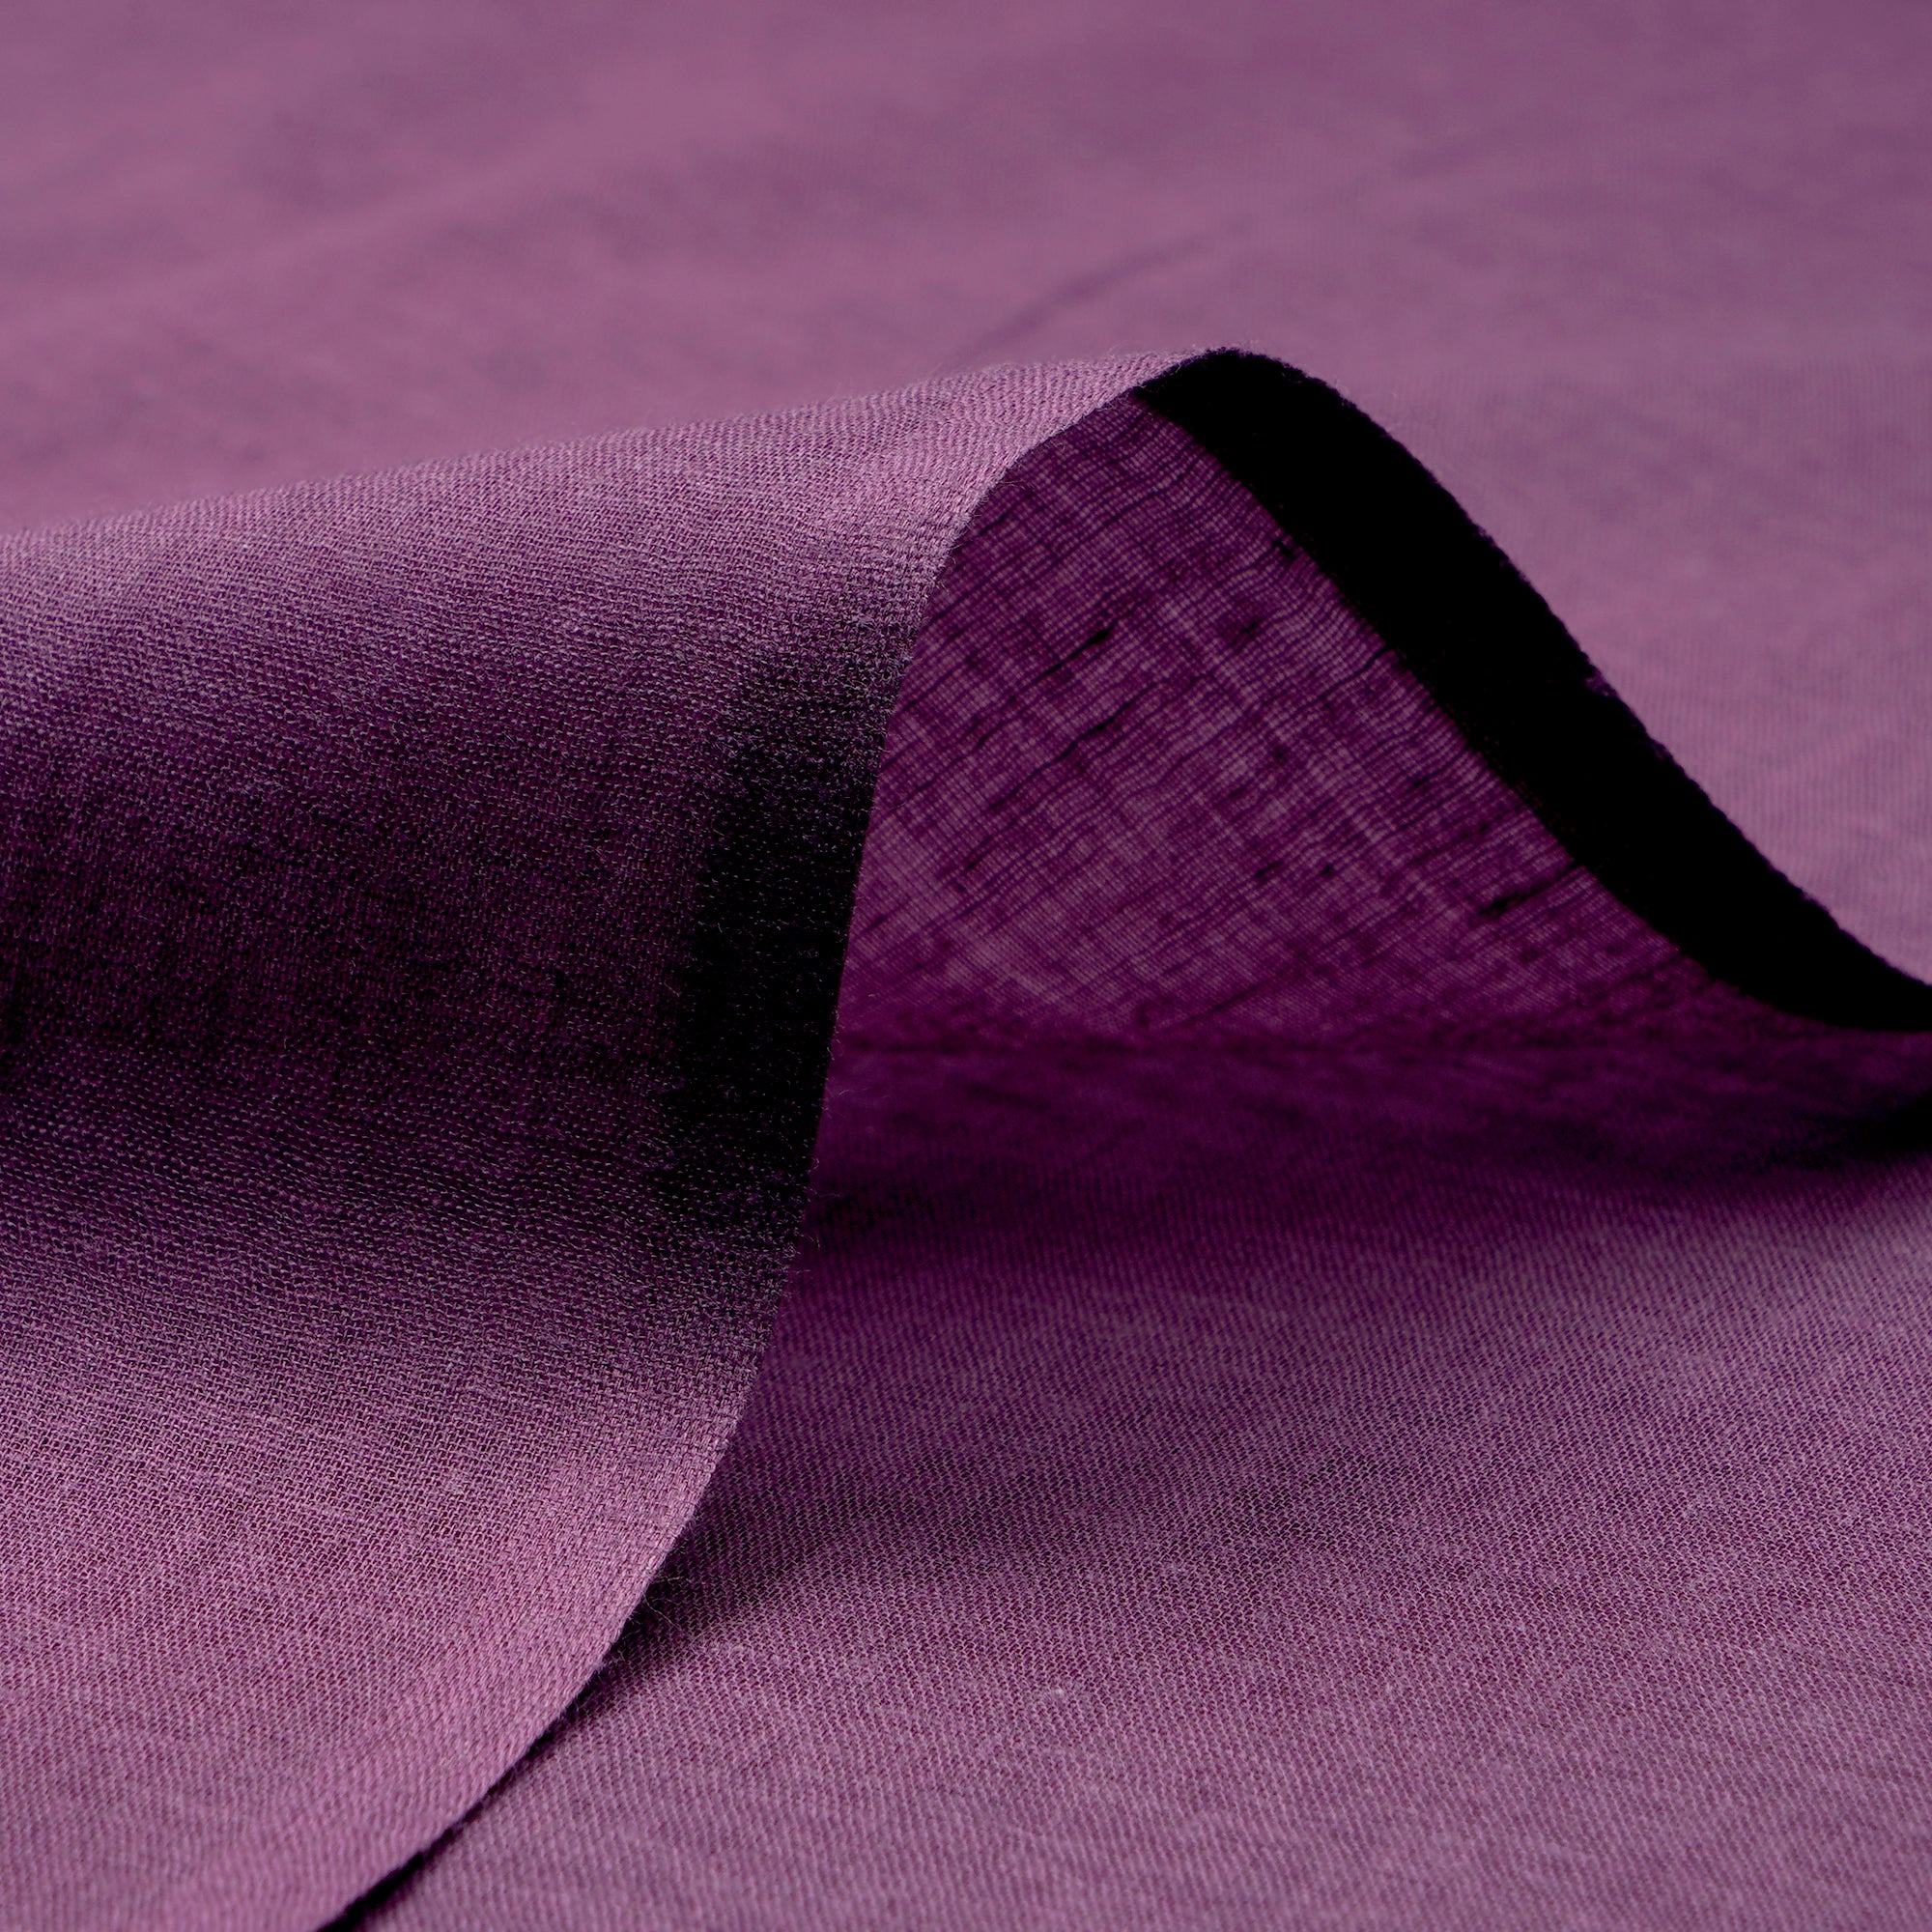 Purple Pure Cotton Voile Fabric